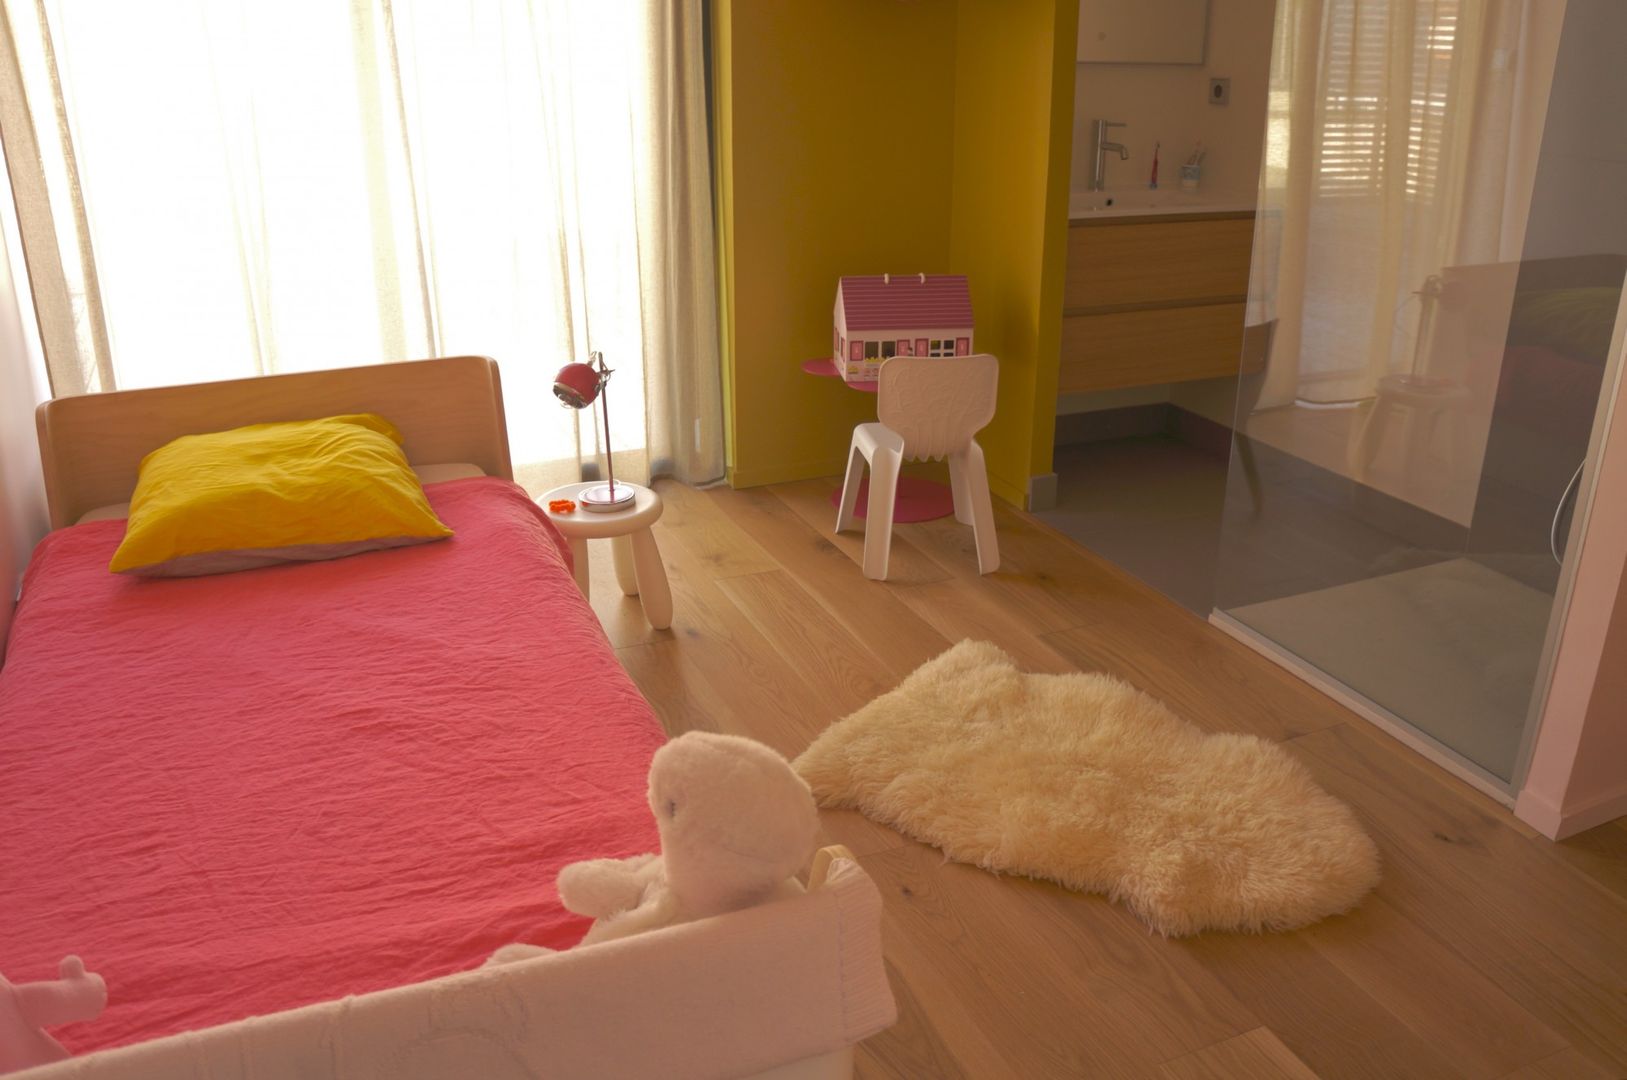 Maison - Parc bordelais, AGENCE-COULEUR AGENCE-COULEUR Nursery/kid’s room